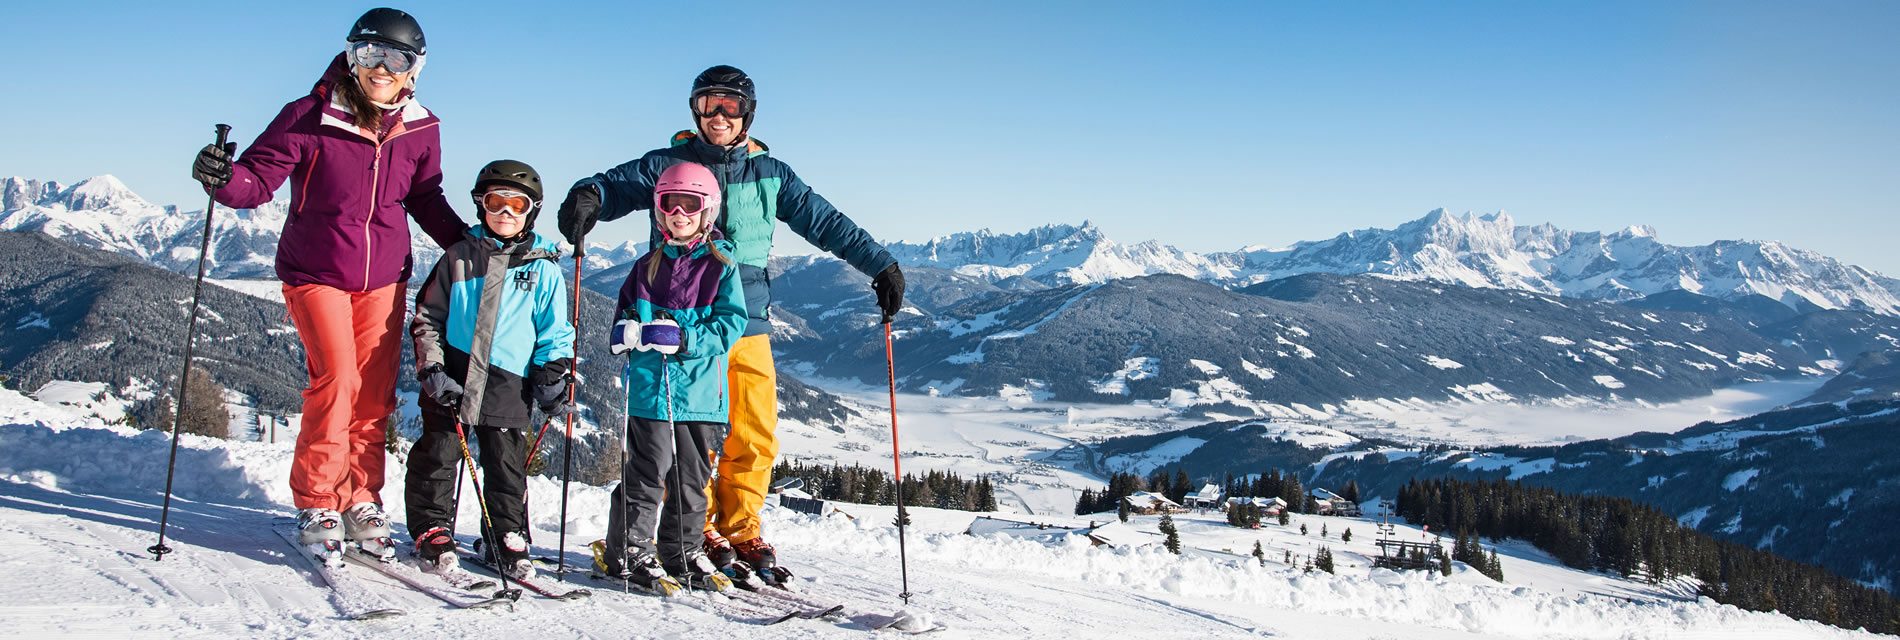 Verbringen Sie einen traumhaften Winterurlaub bei uns im Hotel-Garni Ransburgerhof in Flachau - mitten in Ski amadé